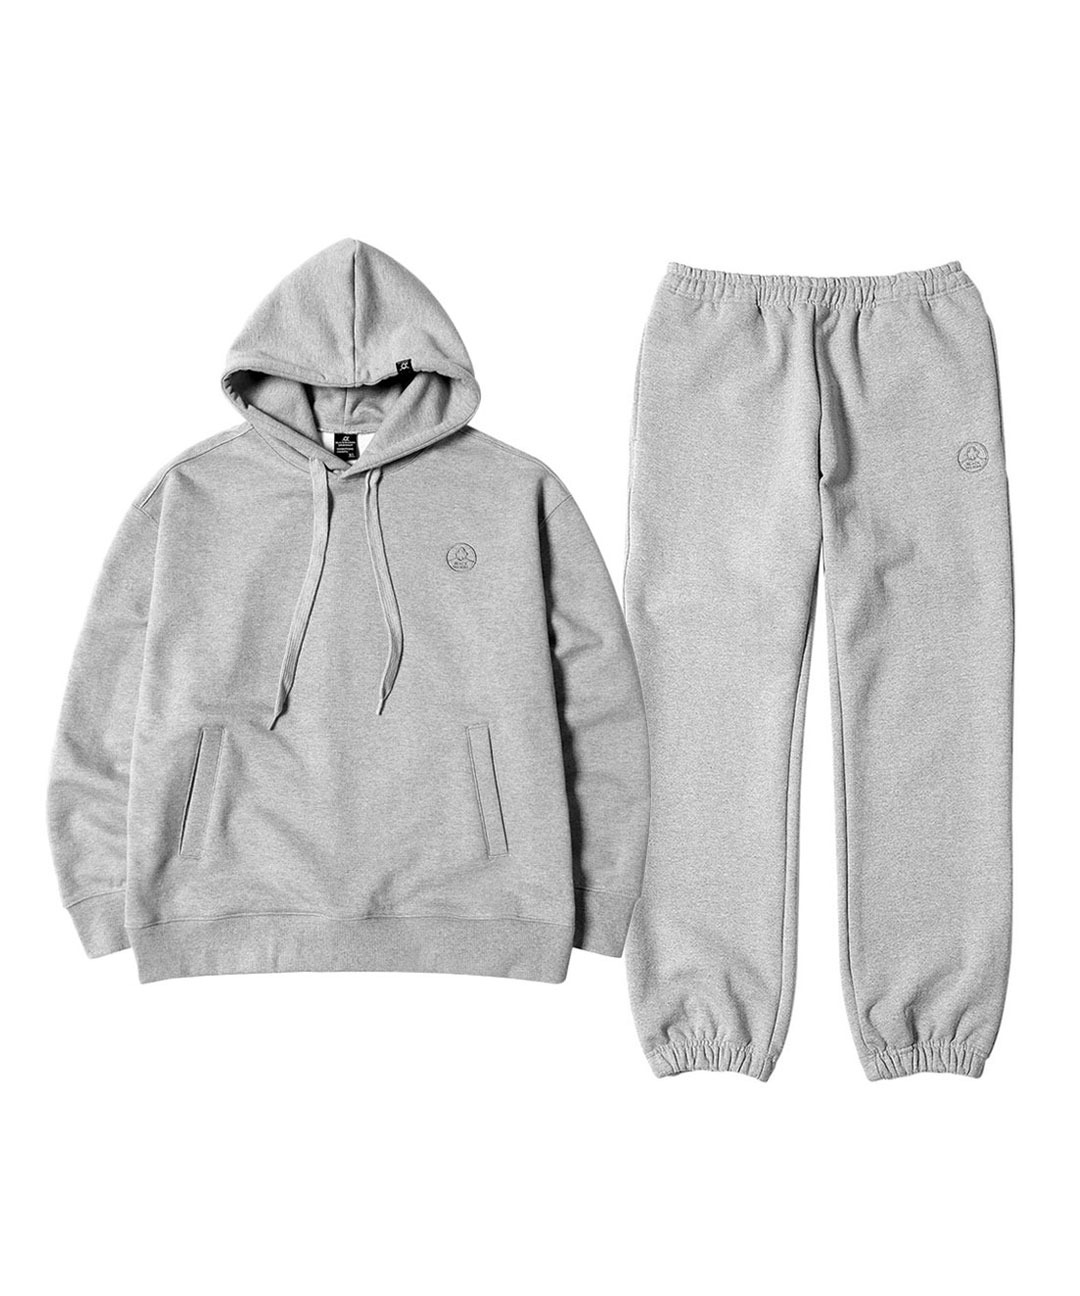 4S Premium Sweatshirt Setup (Gray)